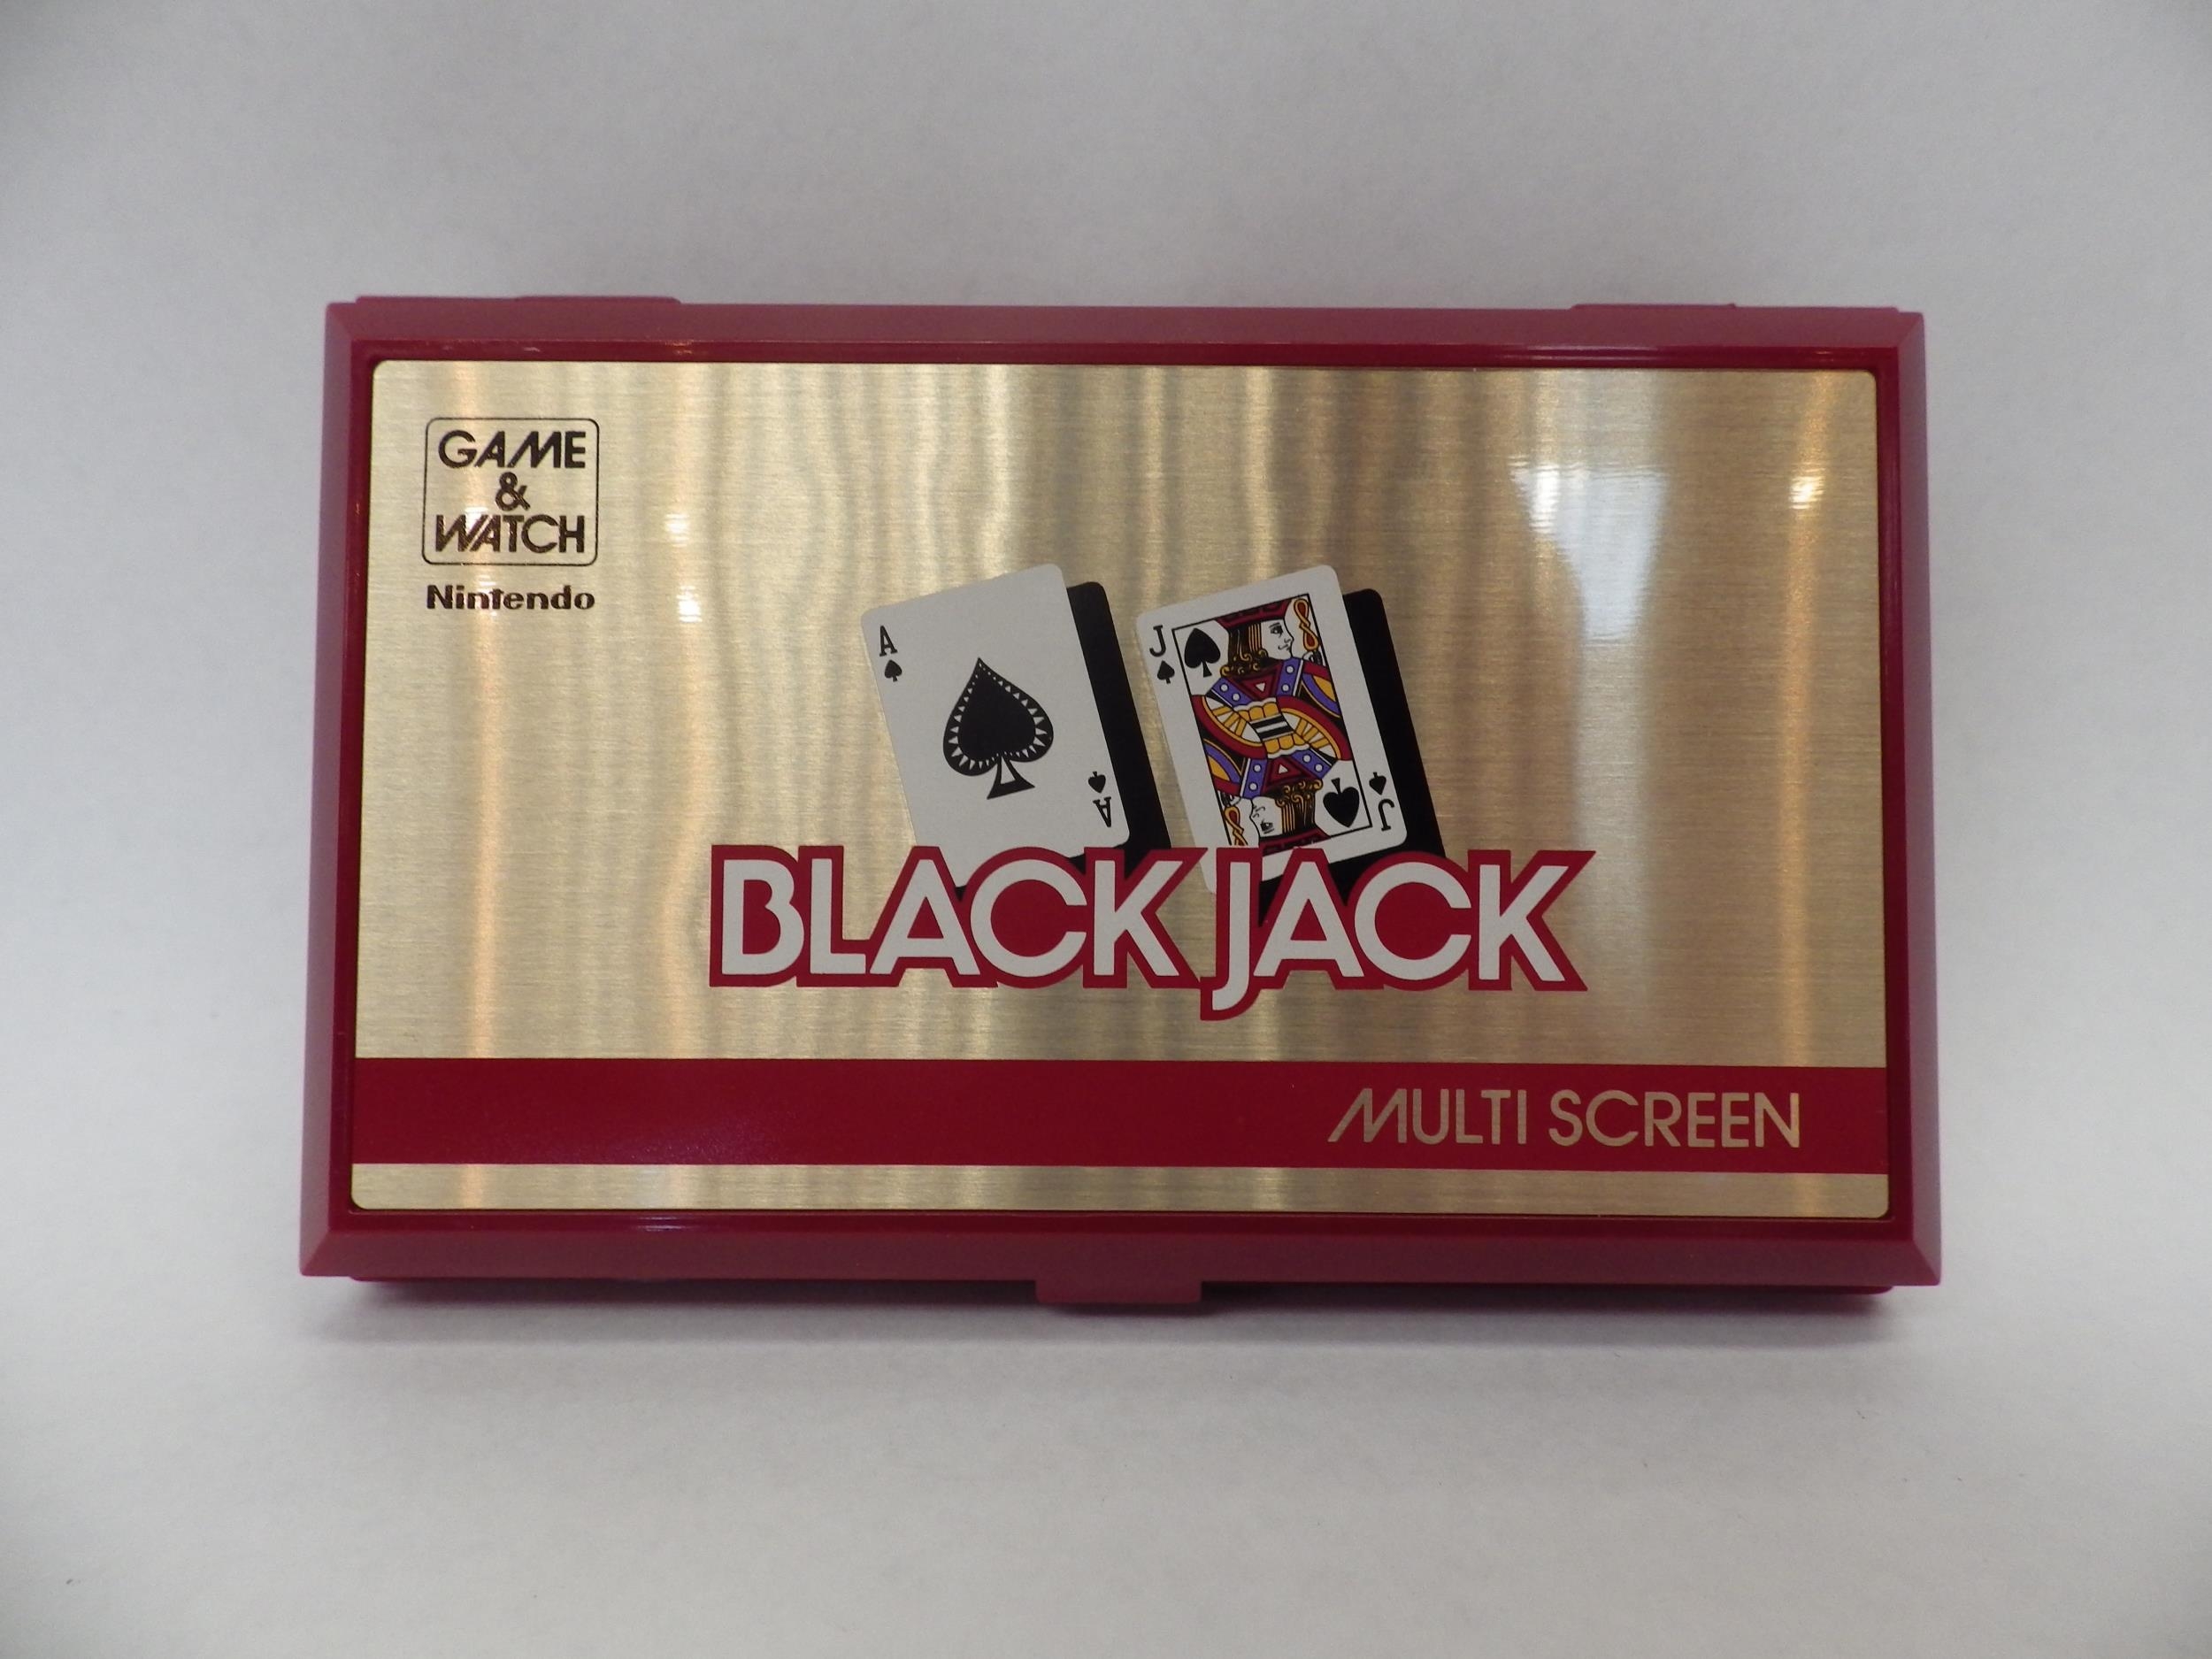 Nintendo Game & Watch Multi Screen Blackjack handheld electronic game (BJ-60) in original box, - Image 3 of 5